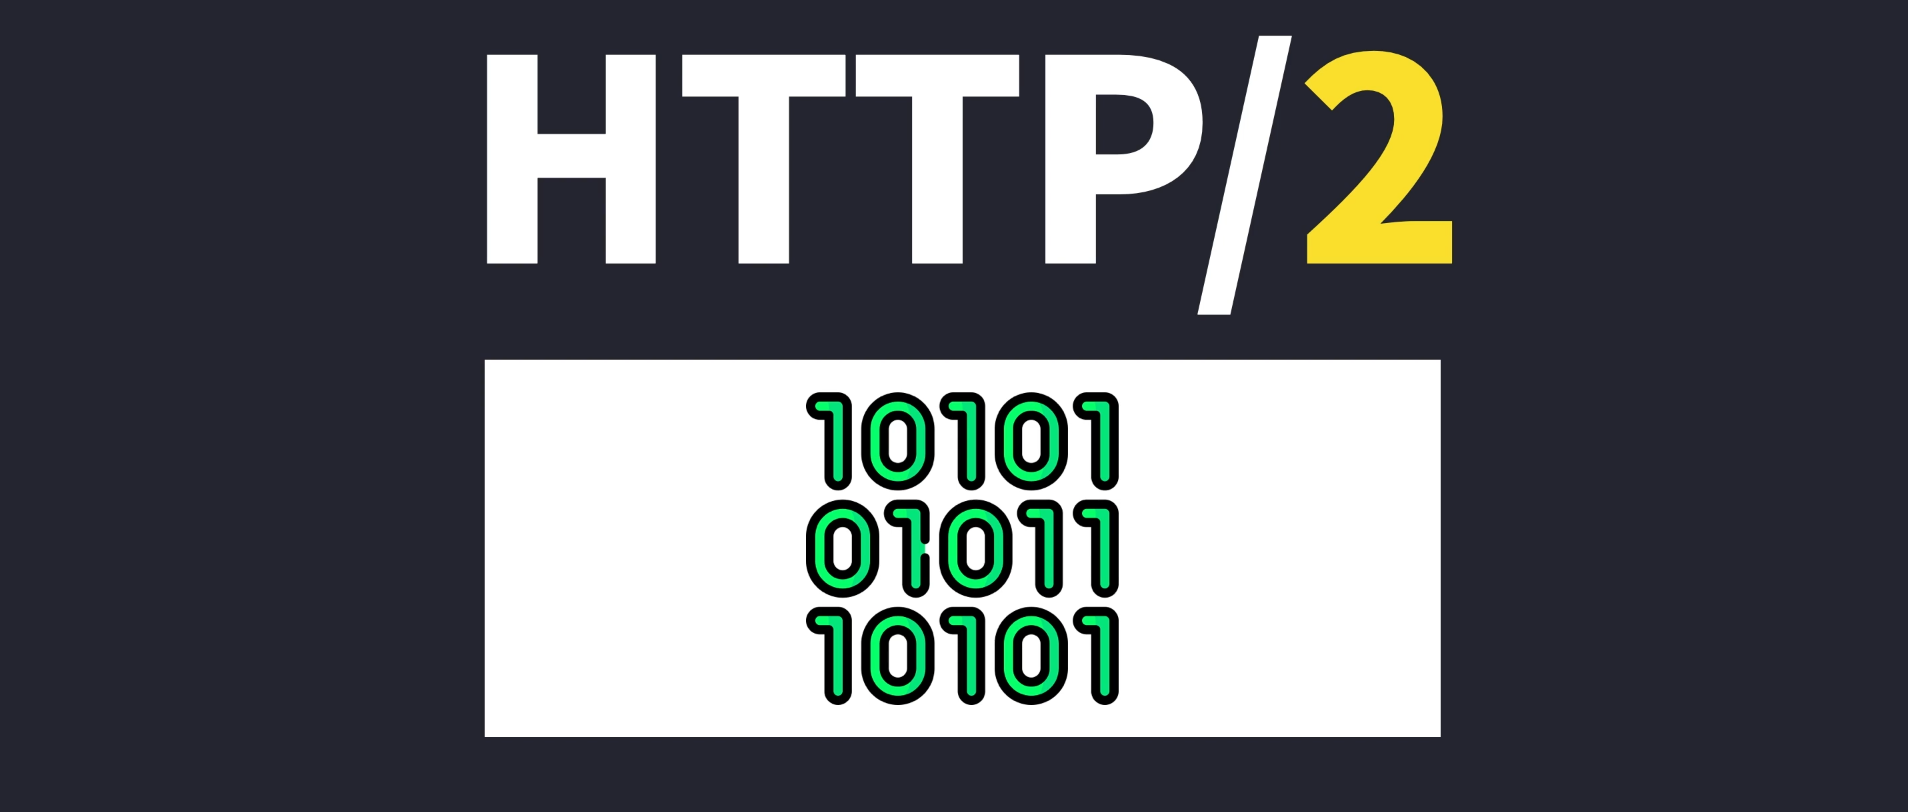 HTTP/2二进制的帧